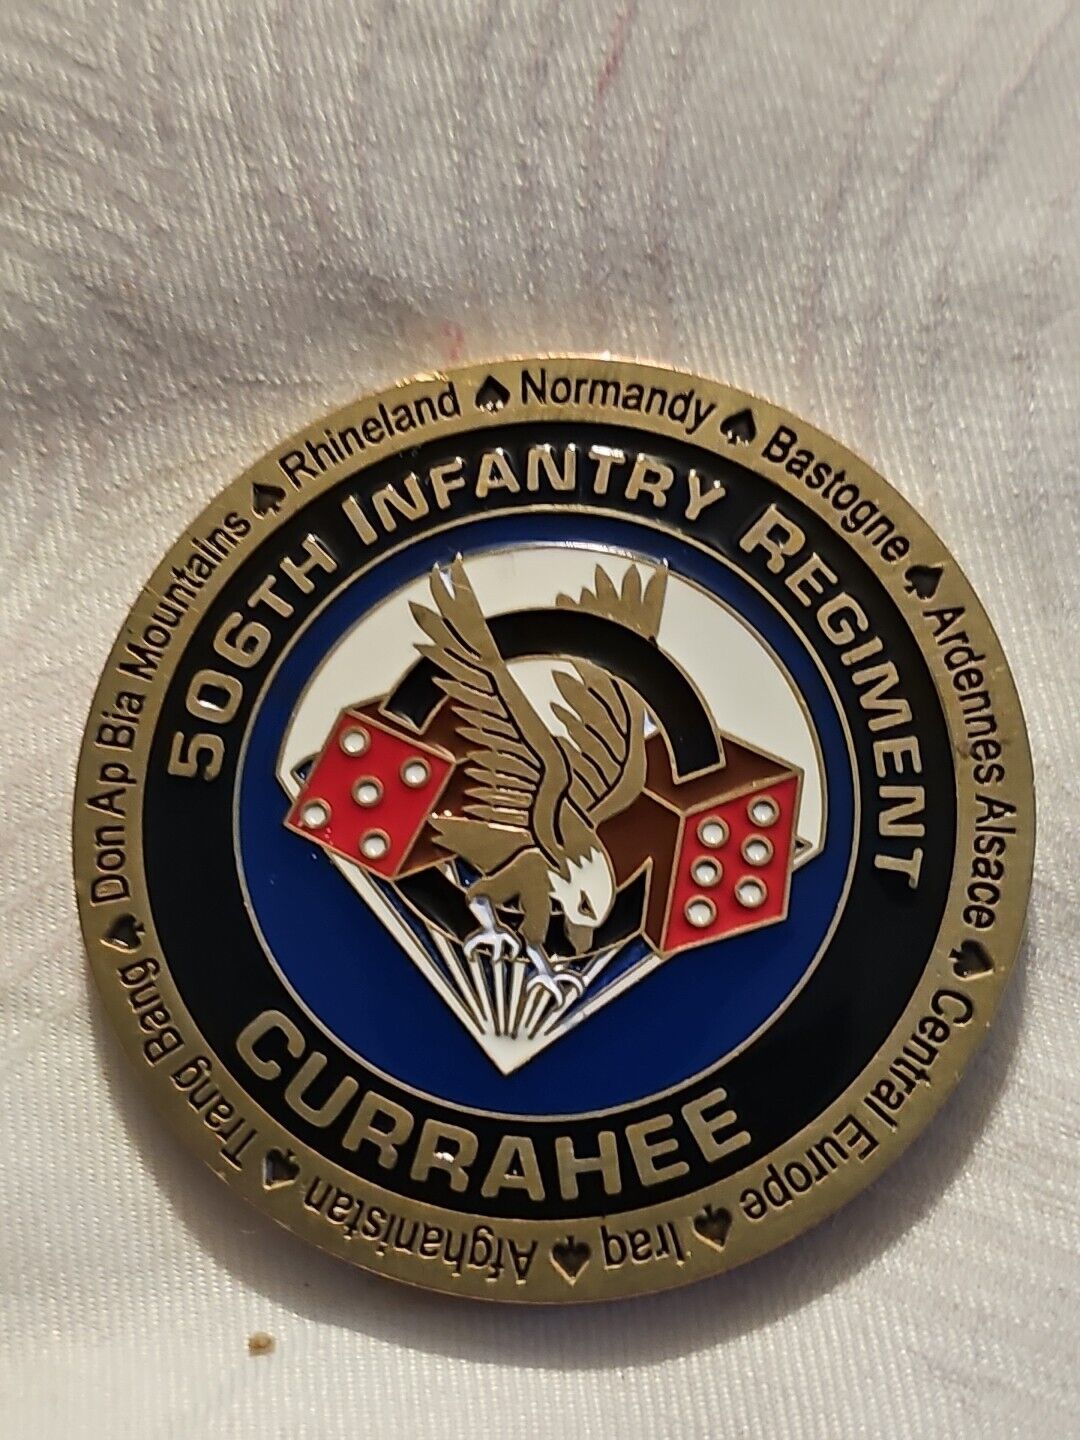 101st Airborne división  506th infantry regimen t currahee